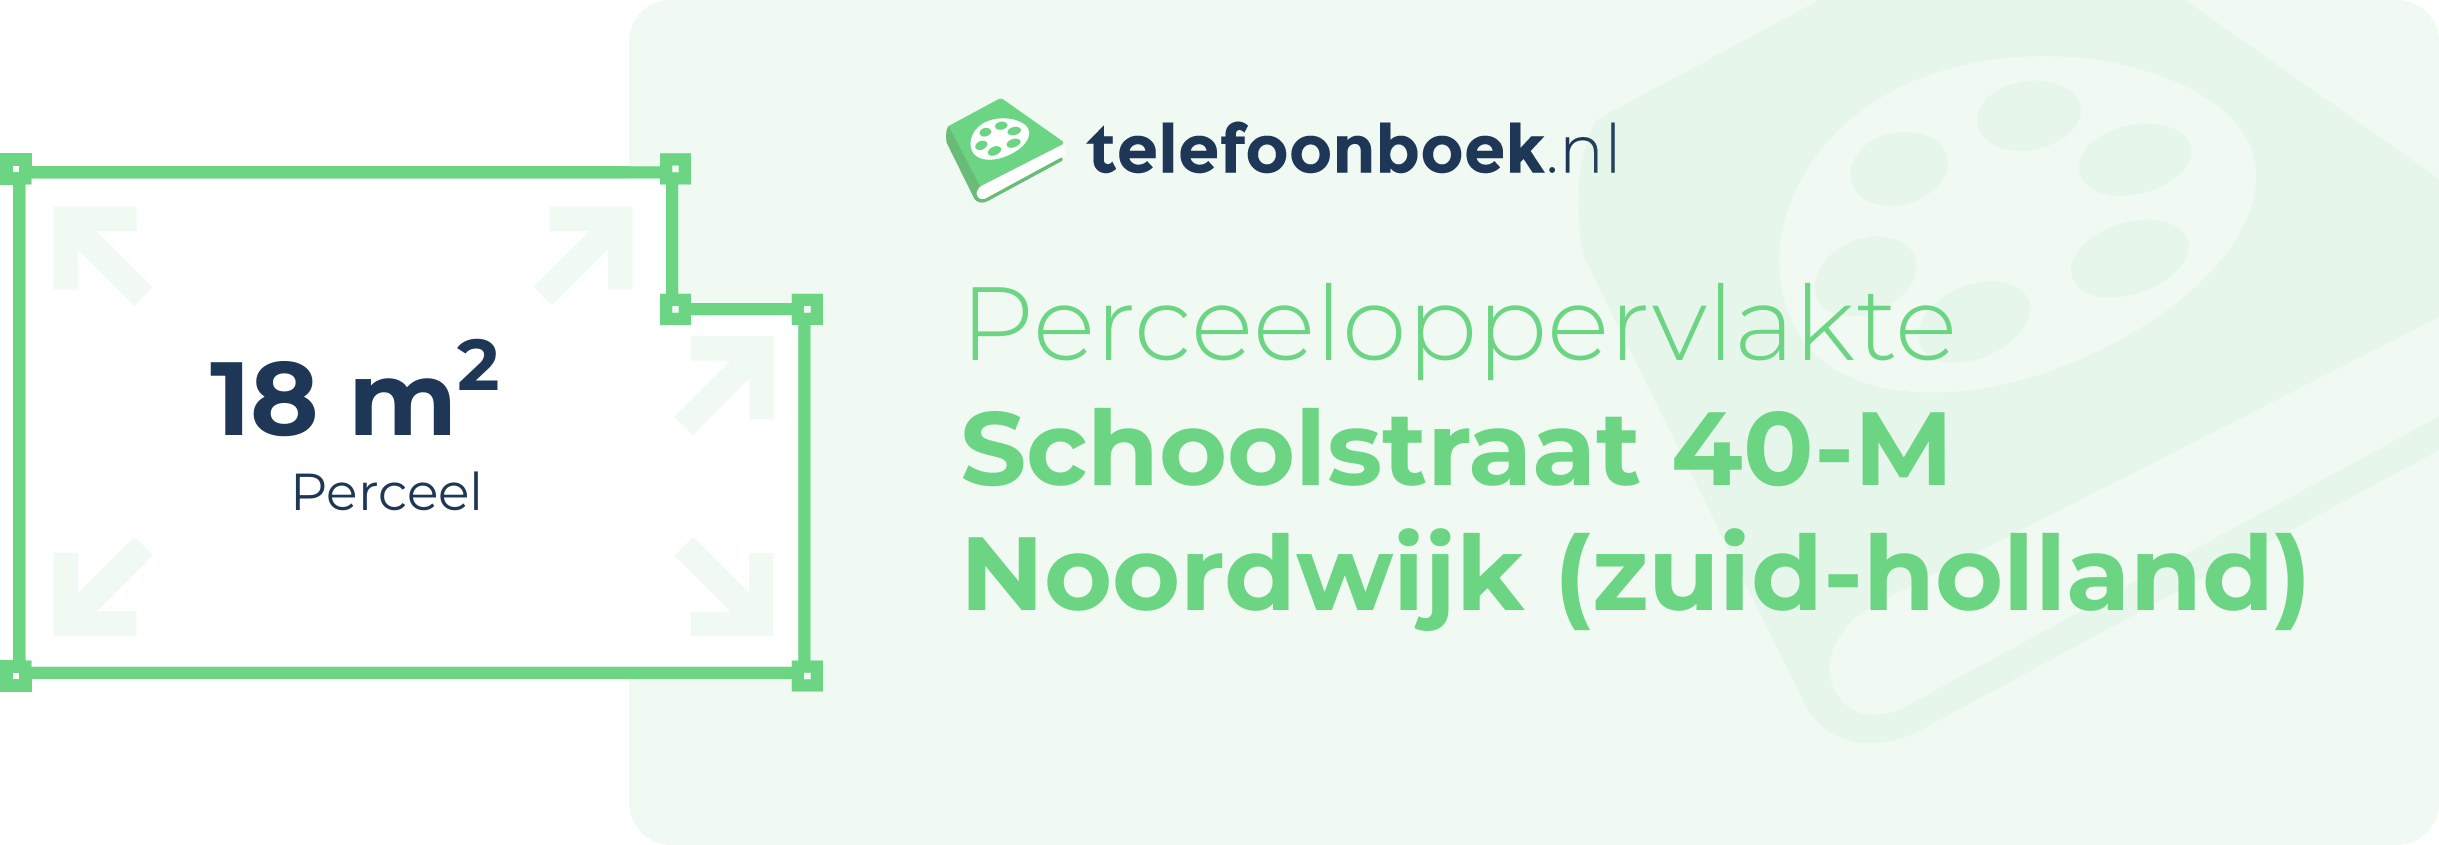 Perceeloppervlakte Schoolstraat 40-M Noordwijk (Zuid-Holland)